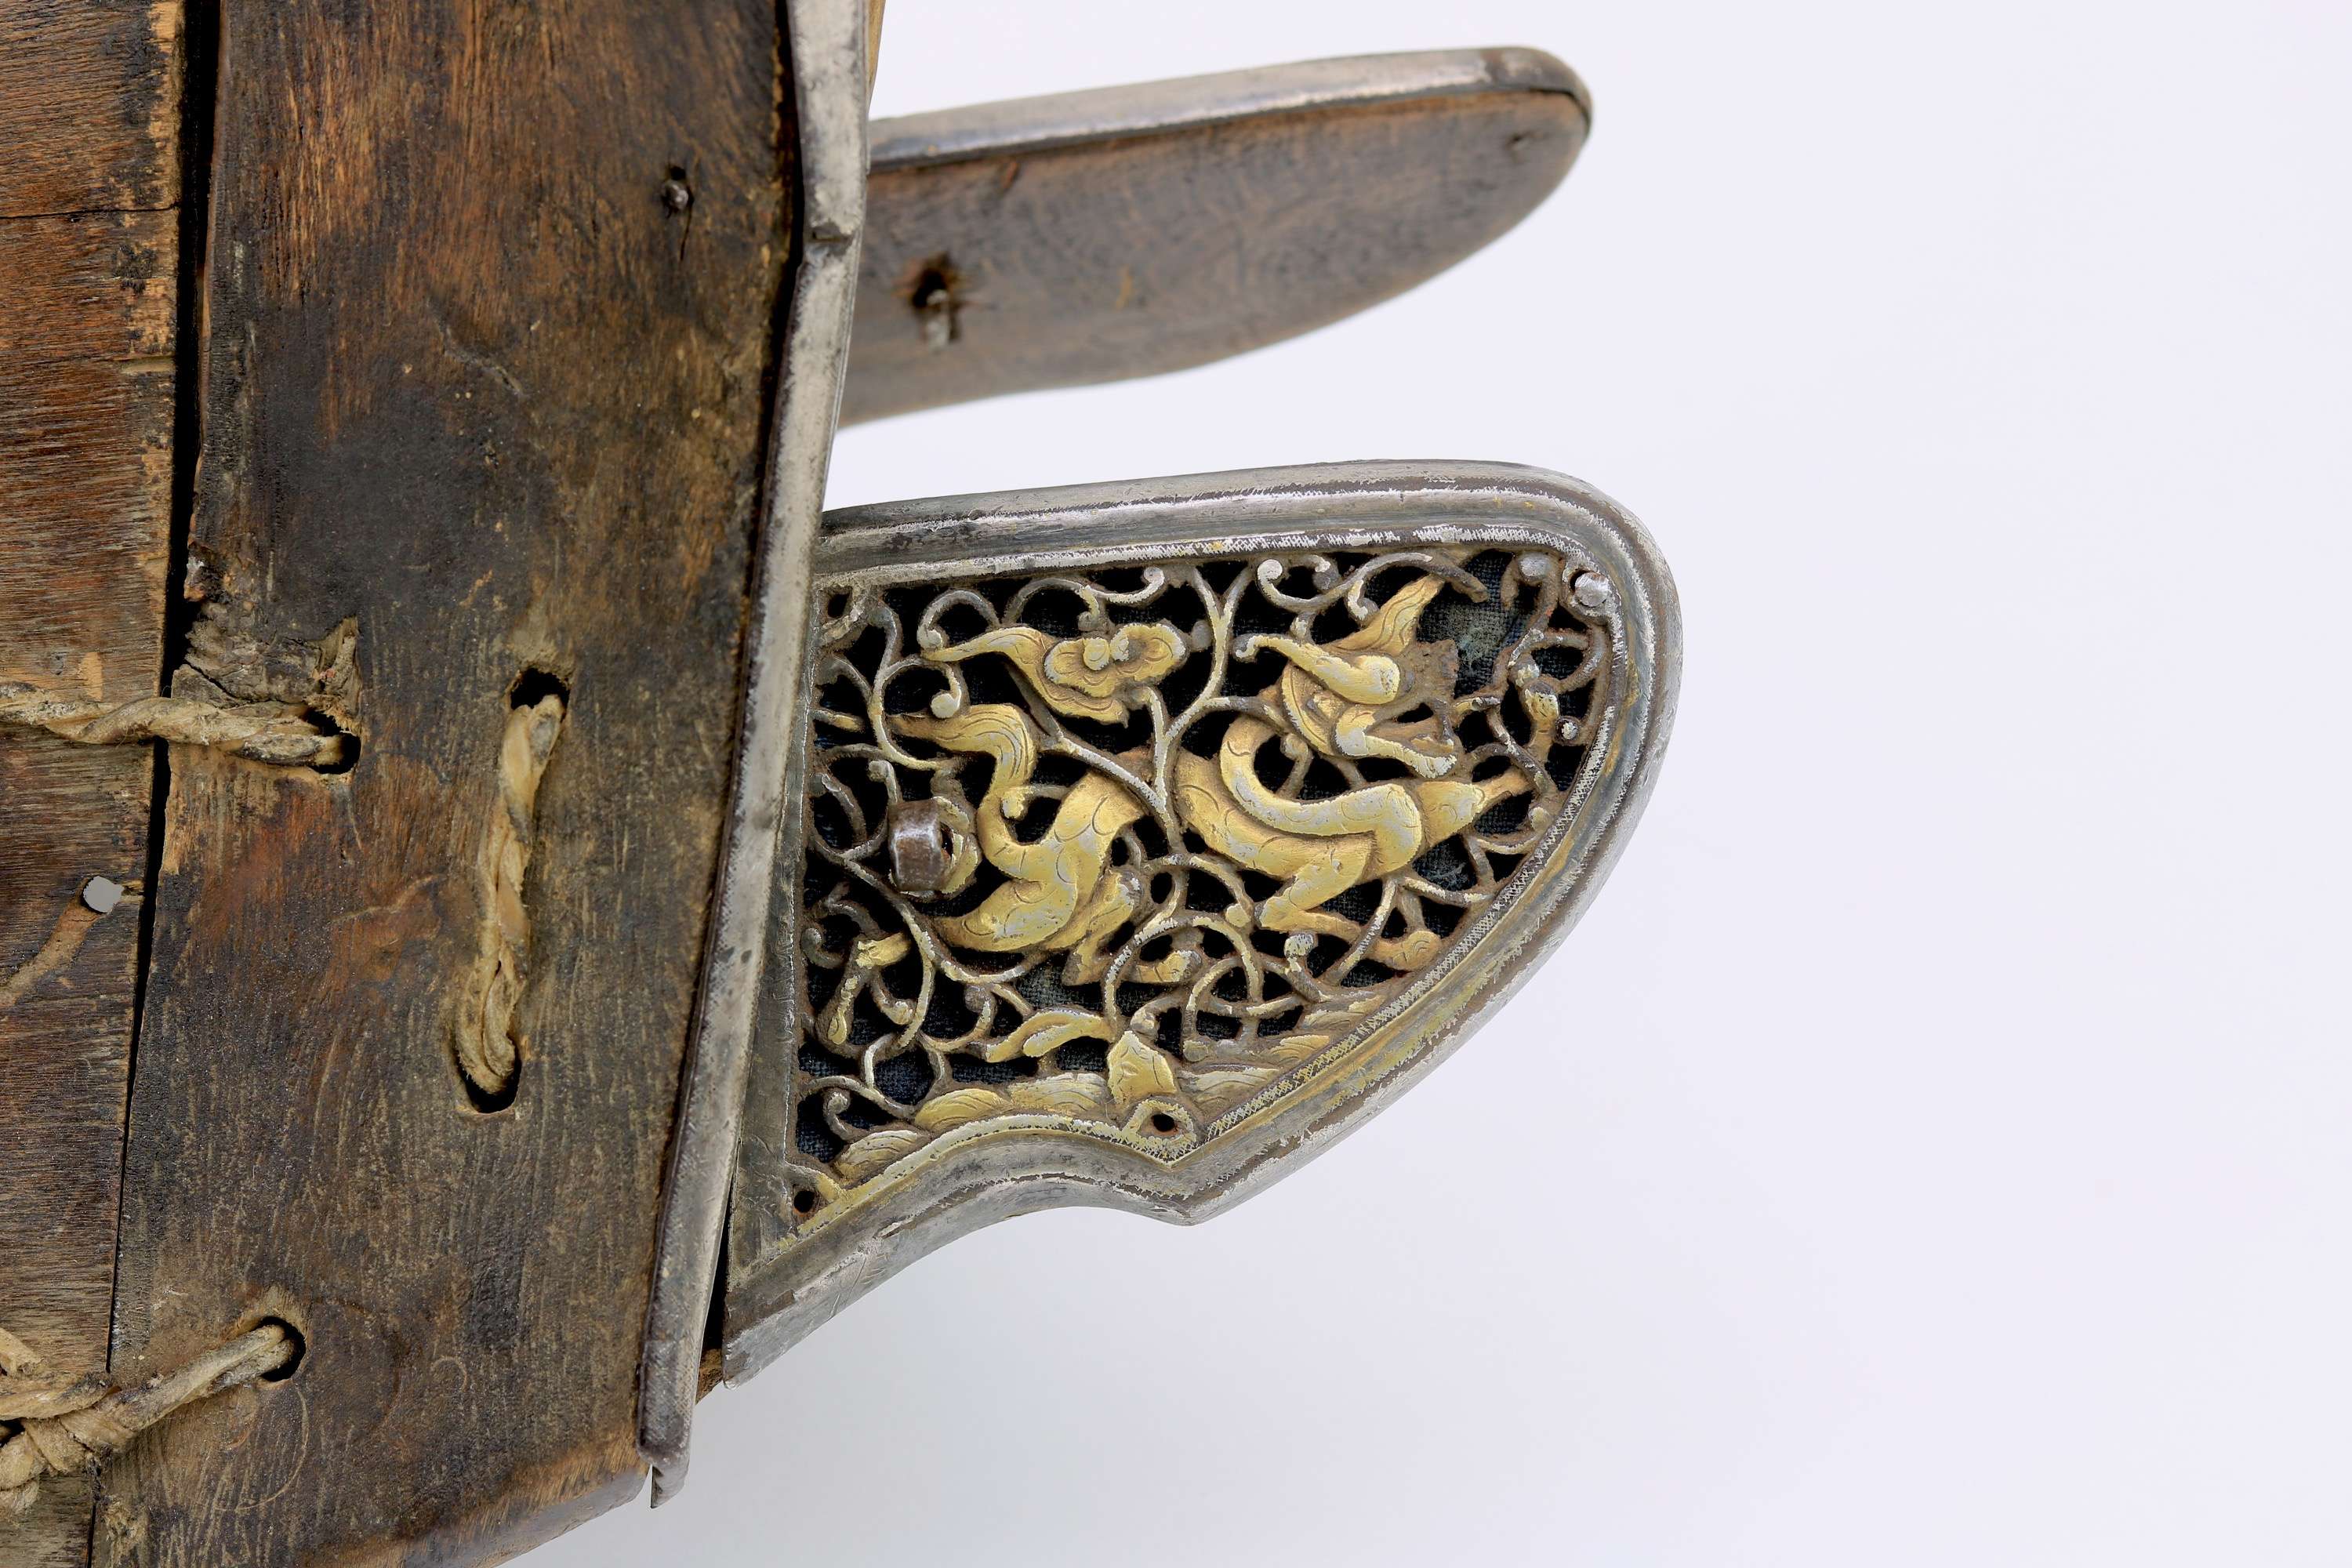 Pierced iron saddle